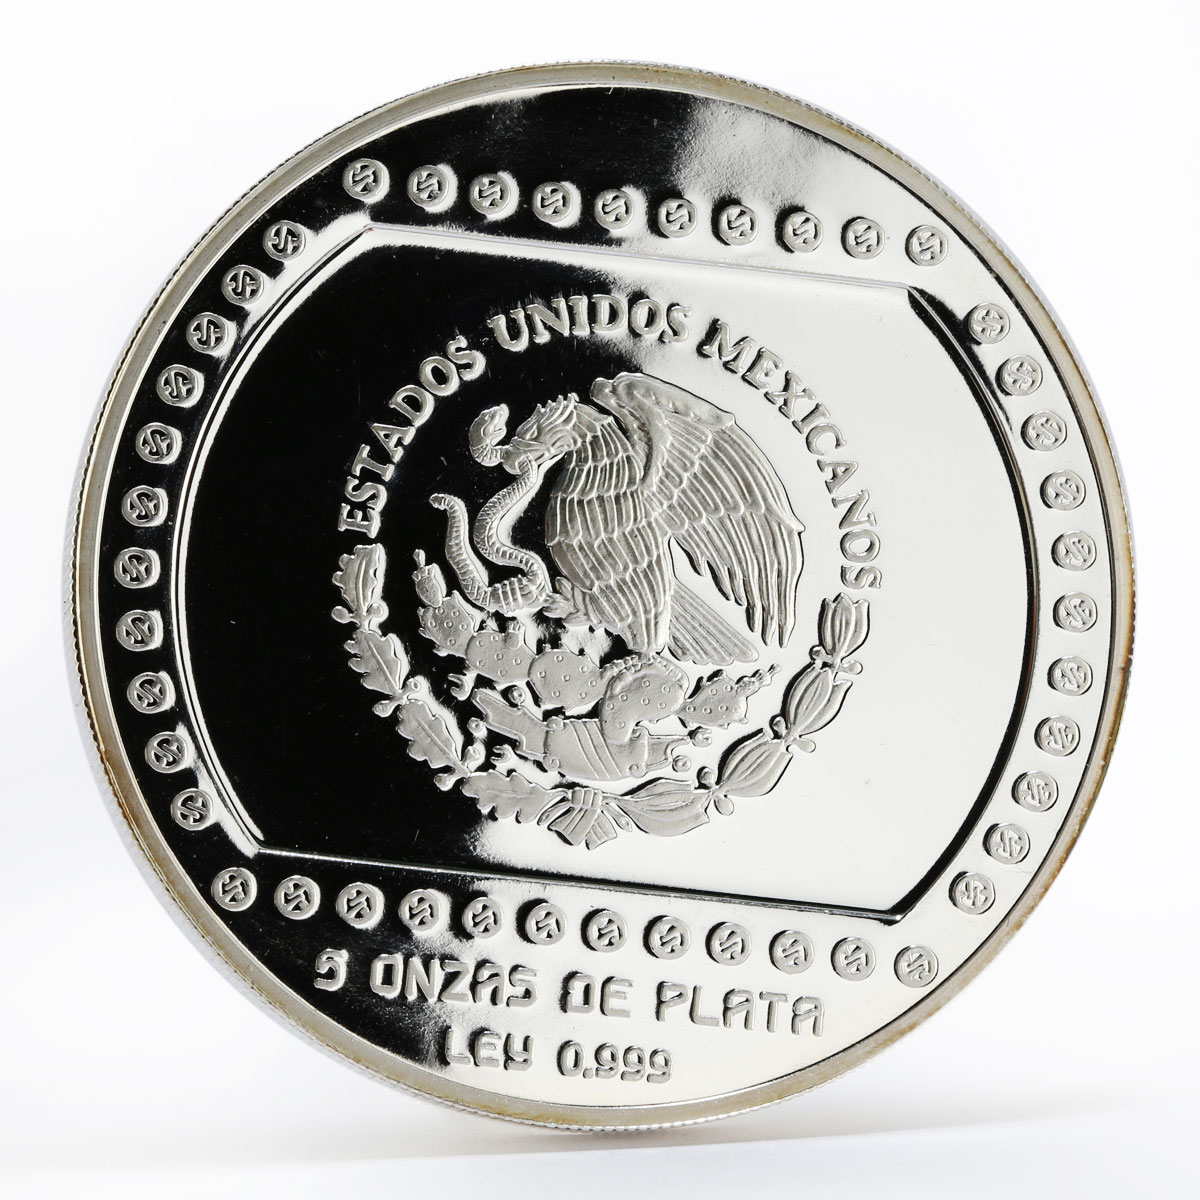 Mexico 10 pesos Piramide de el Tajin proof silver coin 1993